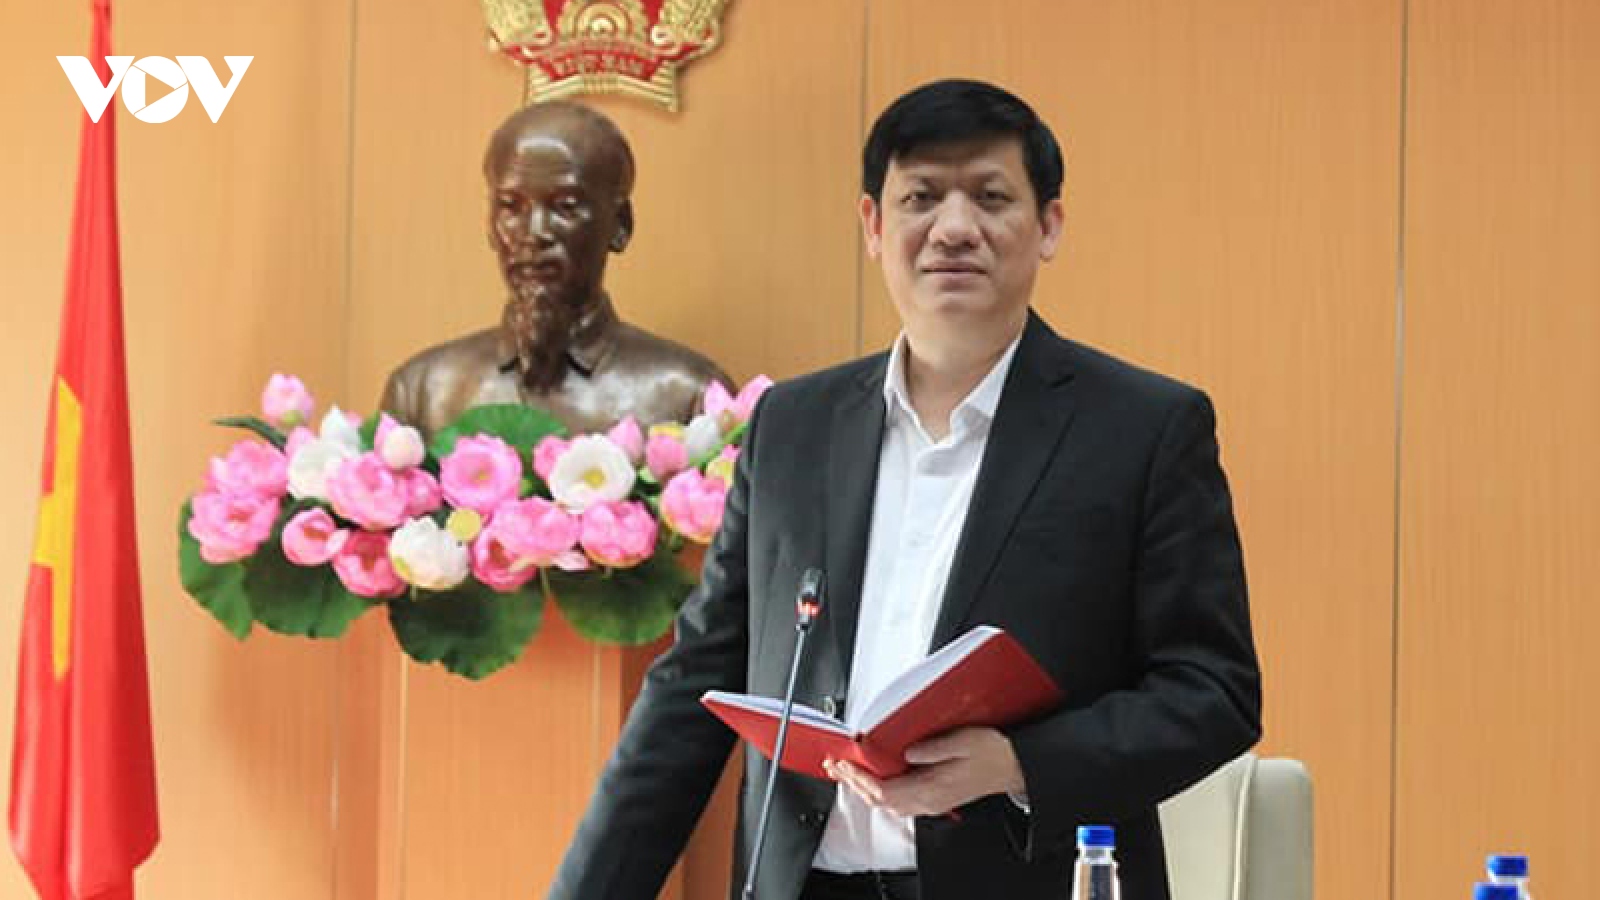 Bộ trưởng Y tế: “Nguy cơ lây nhiễm Covid-19 từ các nước vào Việt Nam vẫn hiện hữu”